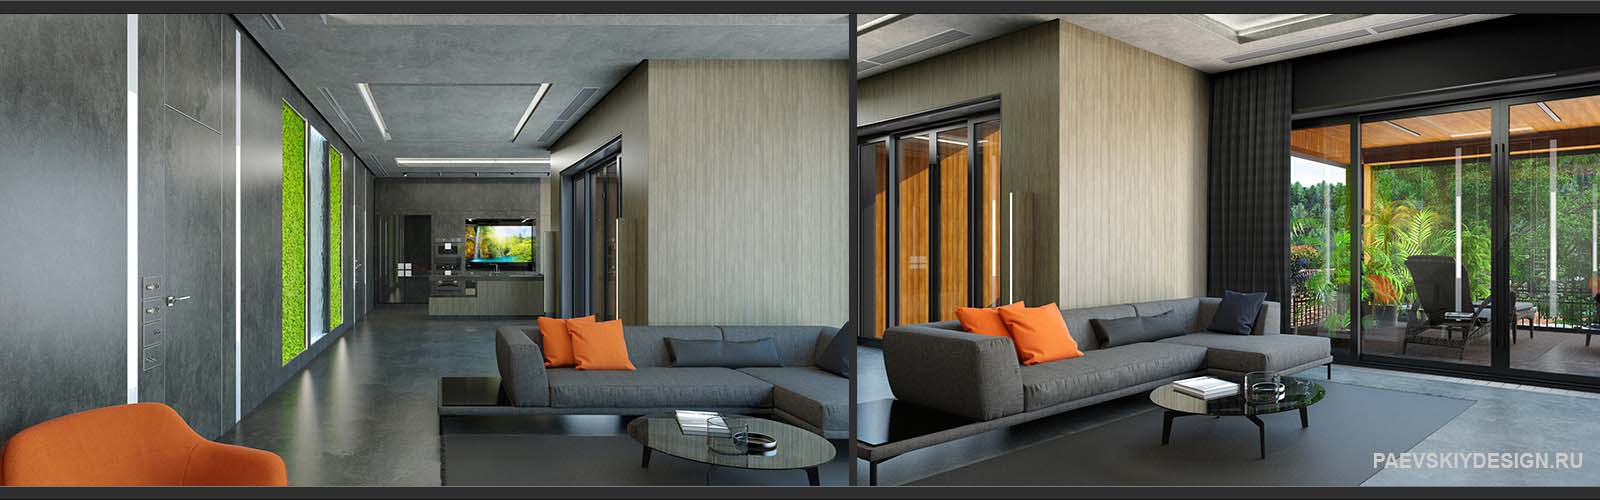 Современный дизайн интерьера загородного дома 500 кв м в МО